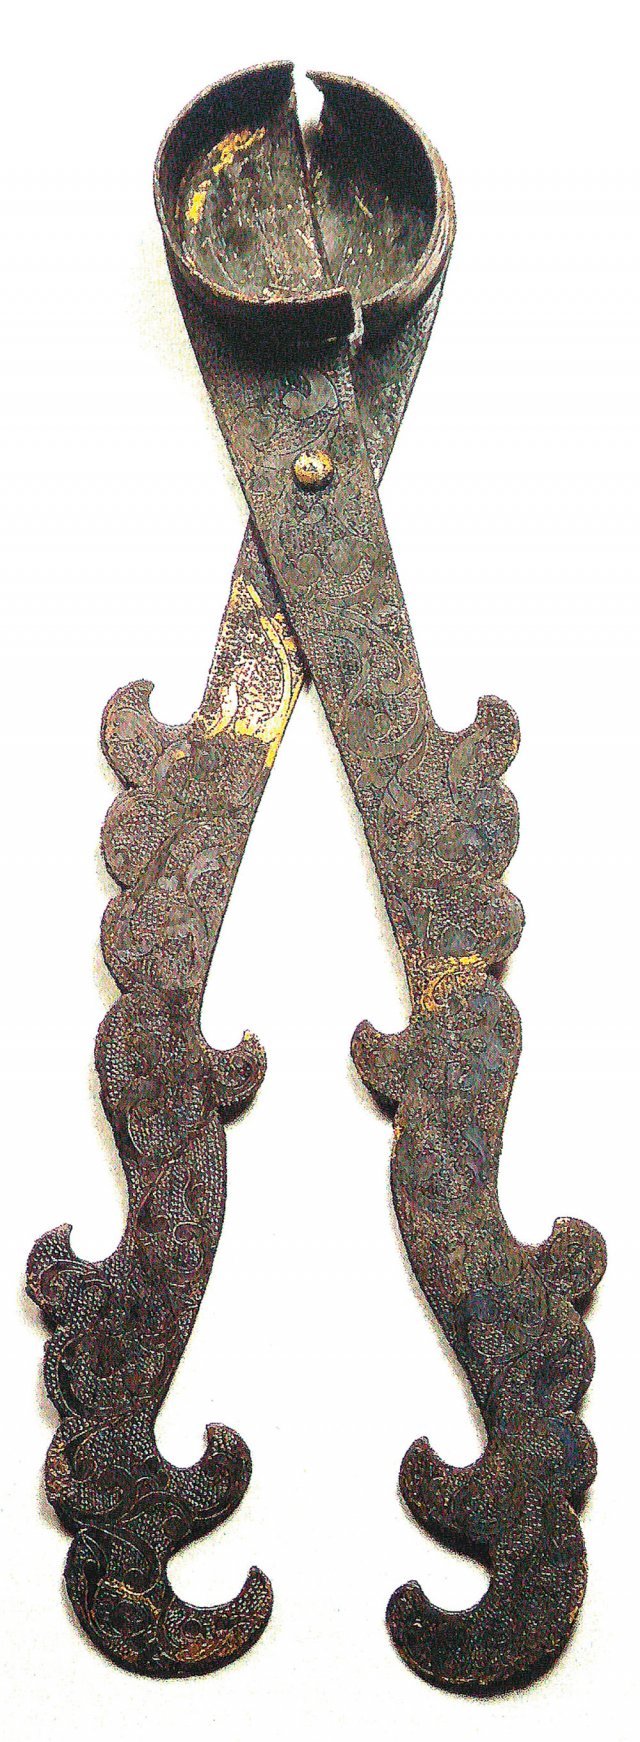 경주 월지에서 발견된 보물 제1844호 금동초심지가위. 두 마리의 봉황이 머리를 교차하는 듯한 독특한 손잡이가 인상적이다. 국립경주박물관 제공